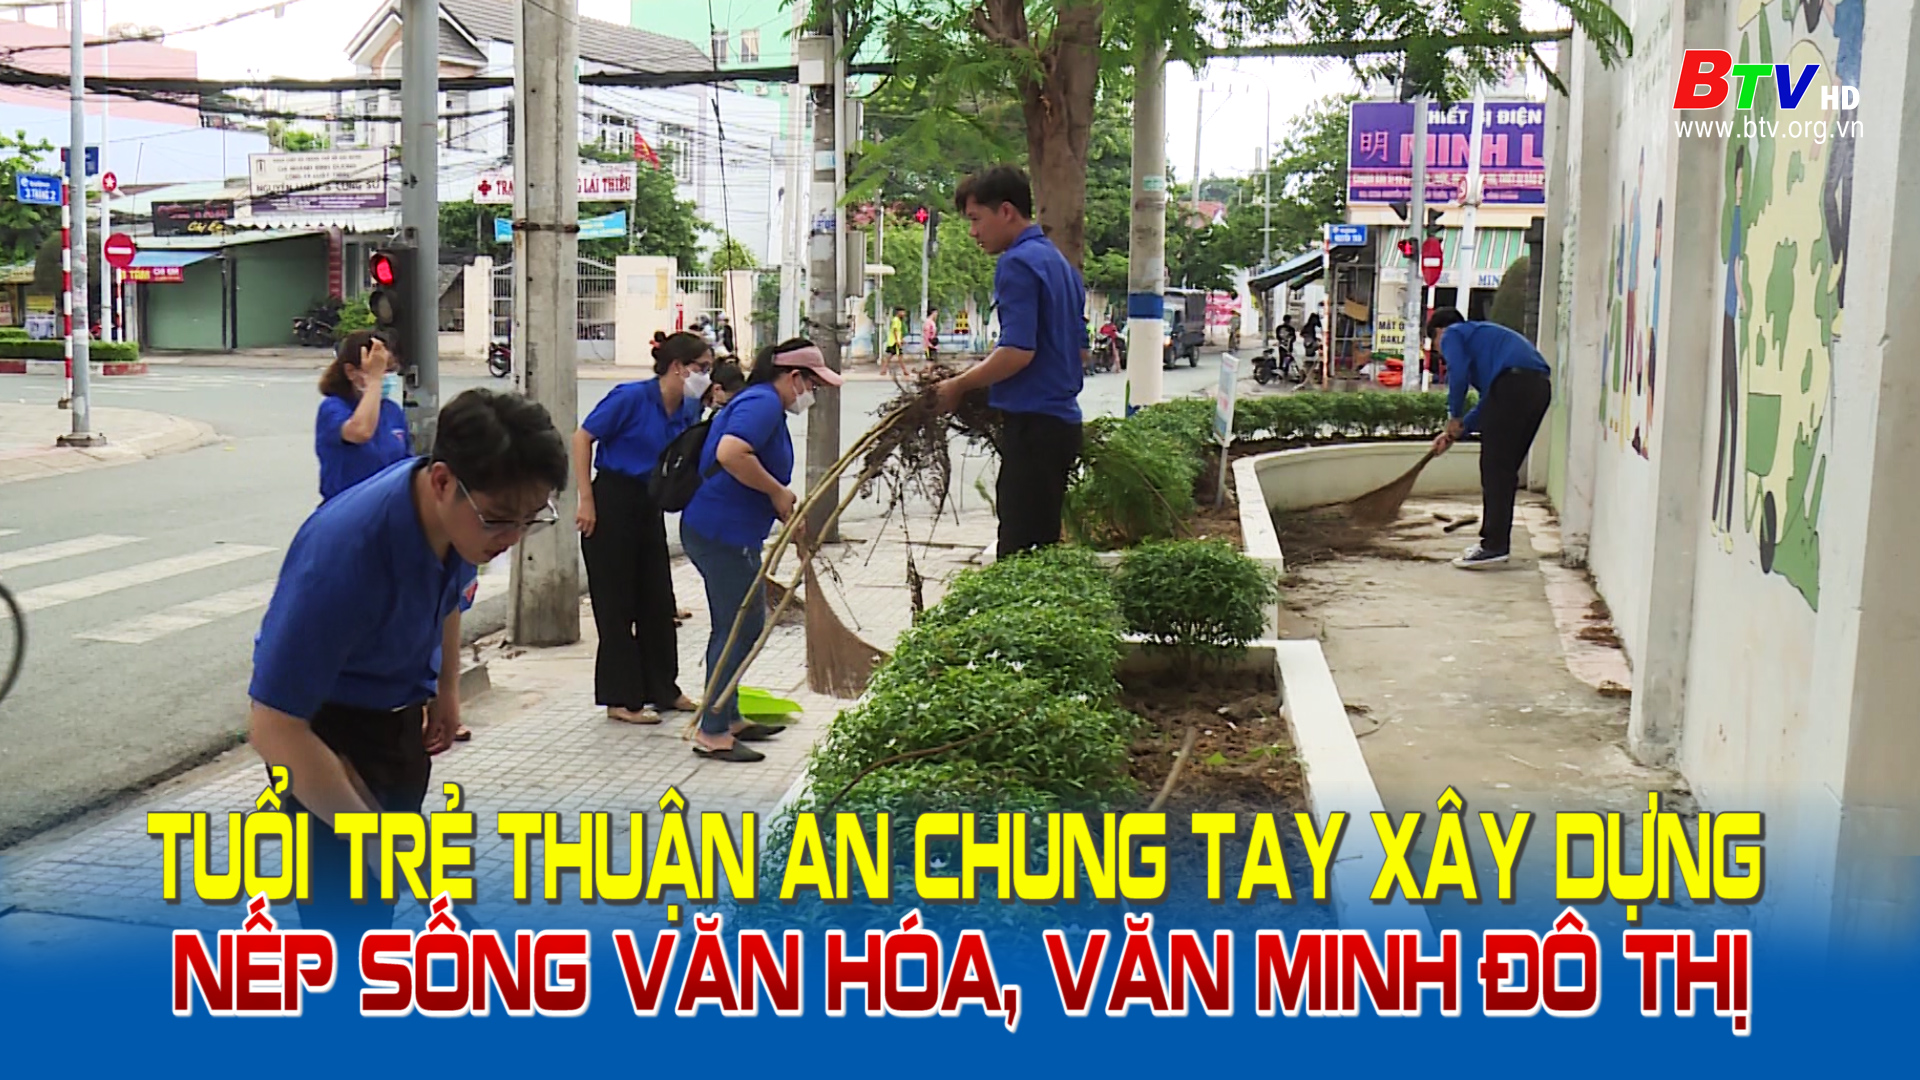 Tuổi trẻ Thuận An chung tay xây dựng nếp sống văn hóa, văn minh đô thị